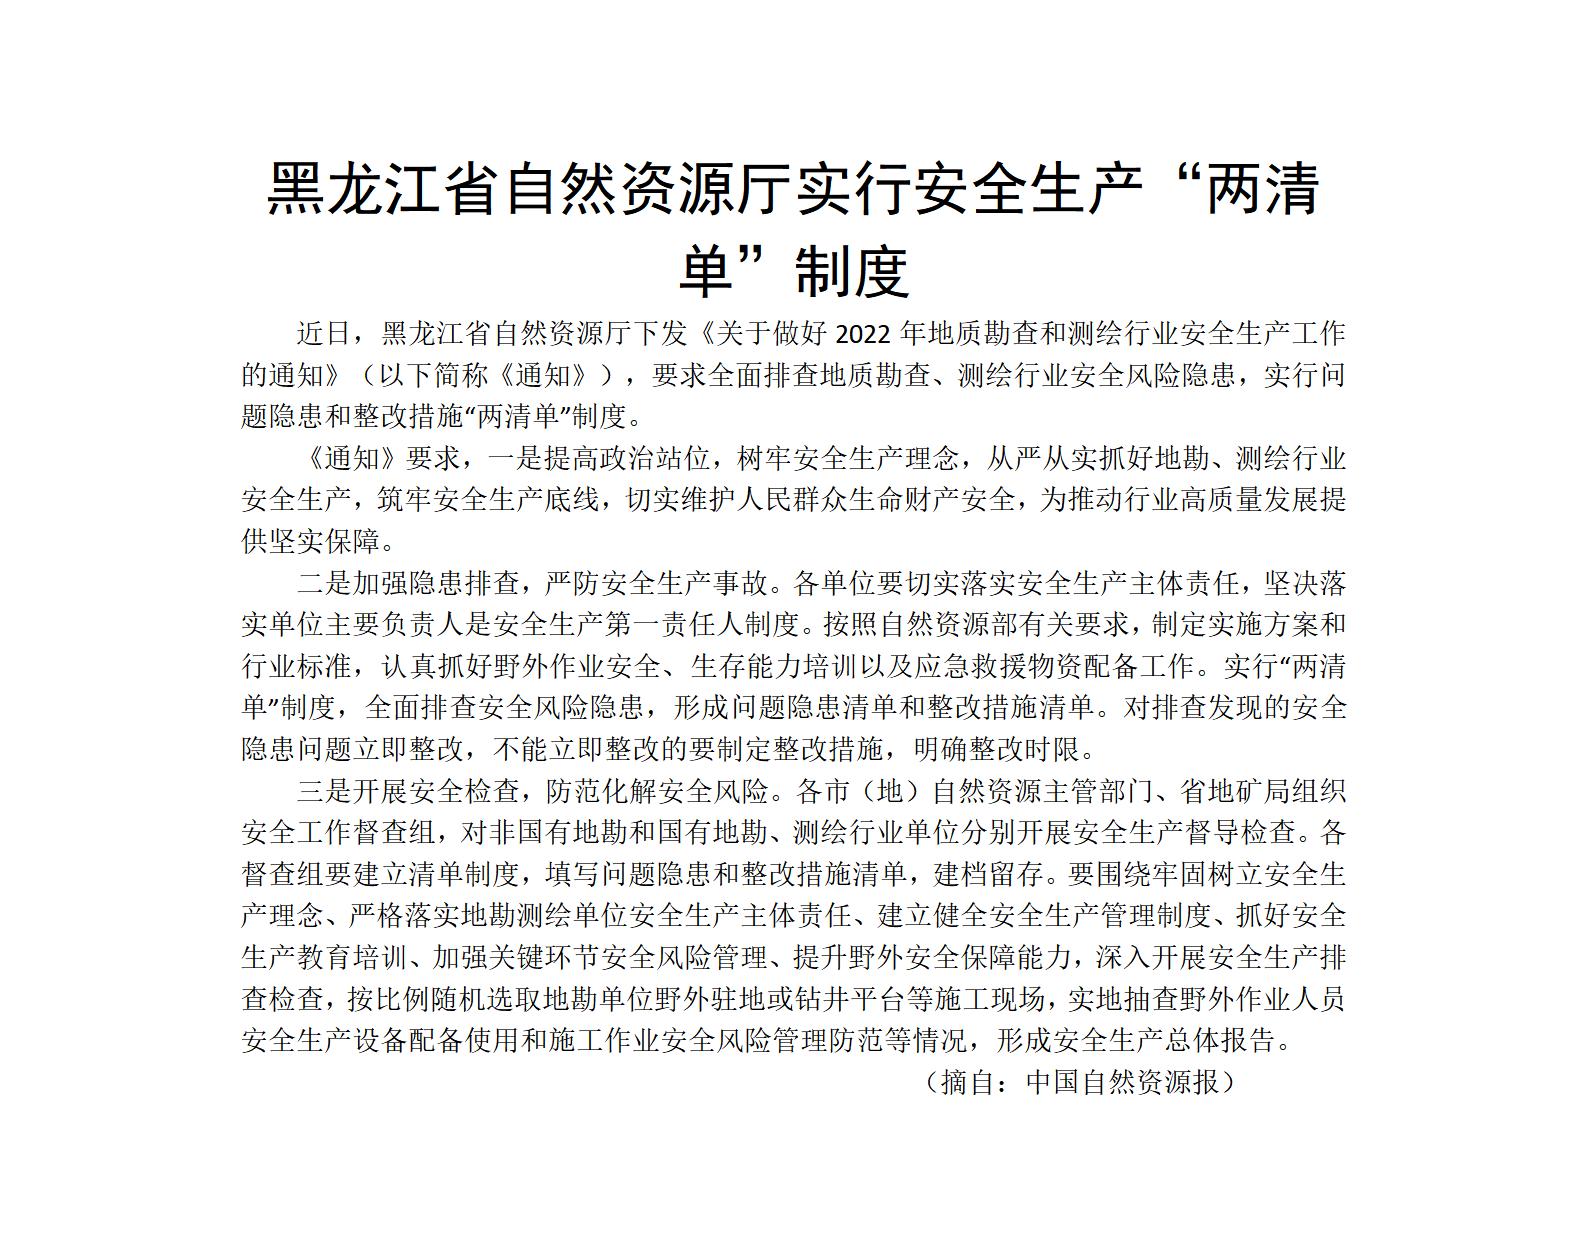 黑龙江省自然资源厅实行安全生产“两清单”制度